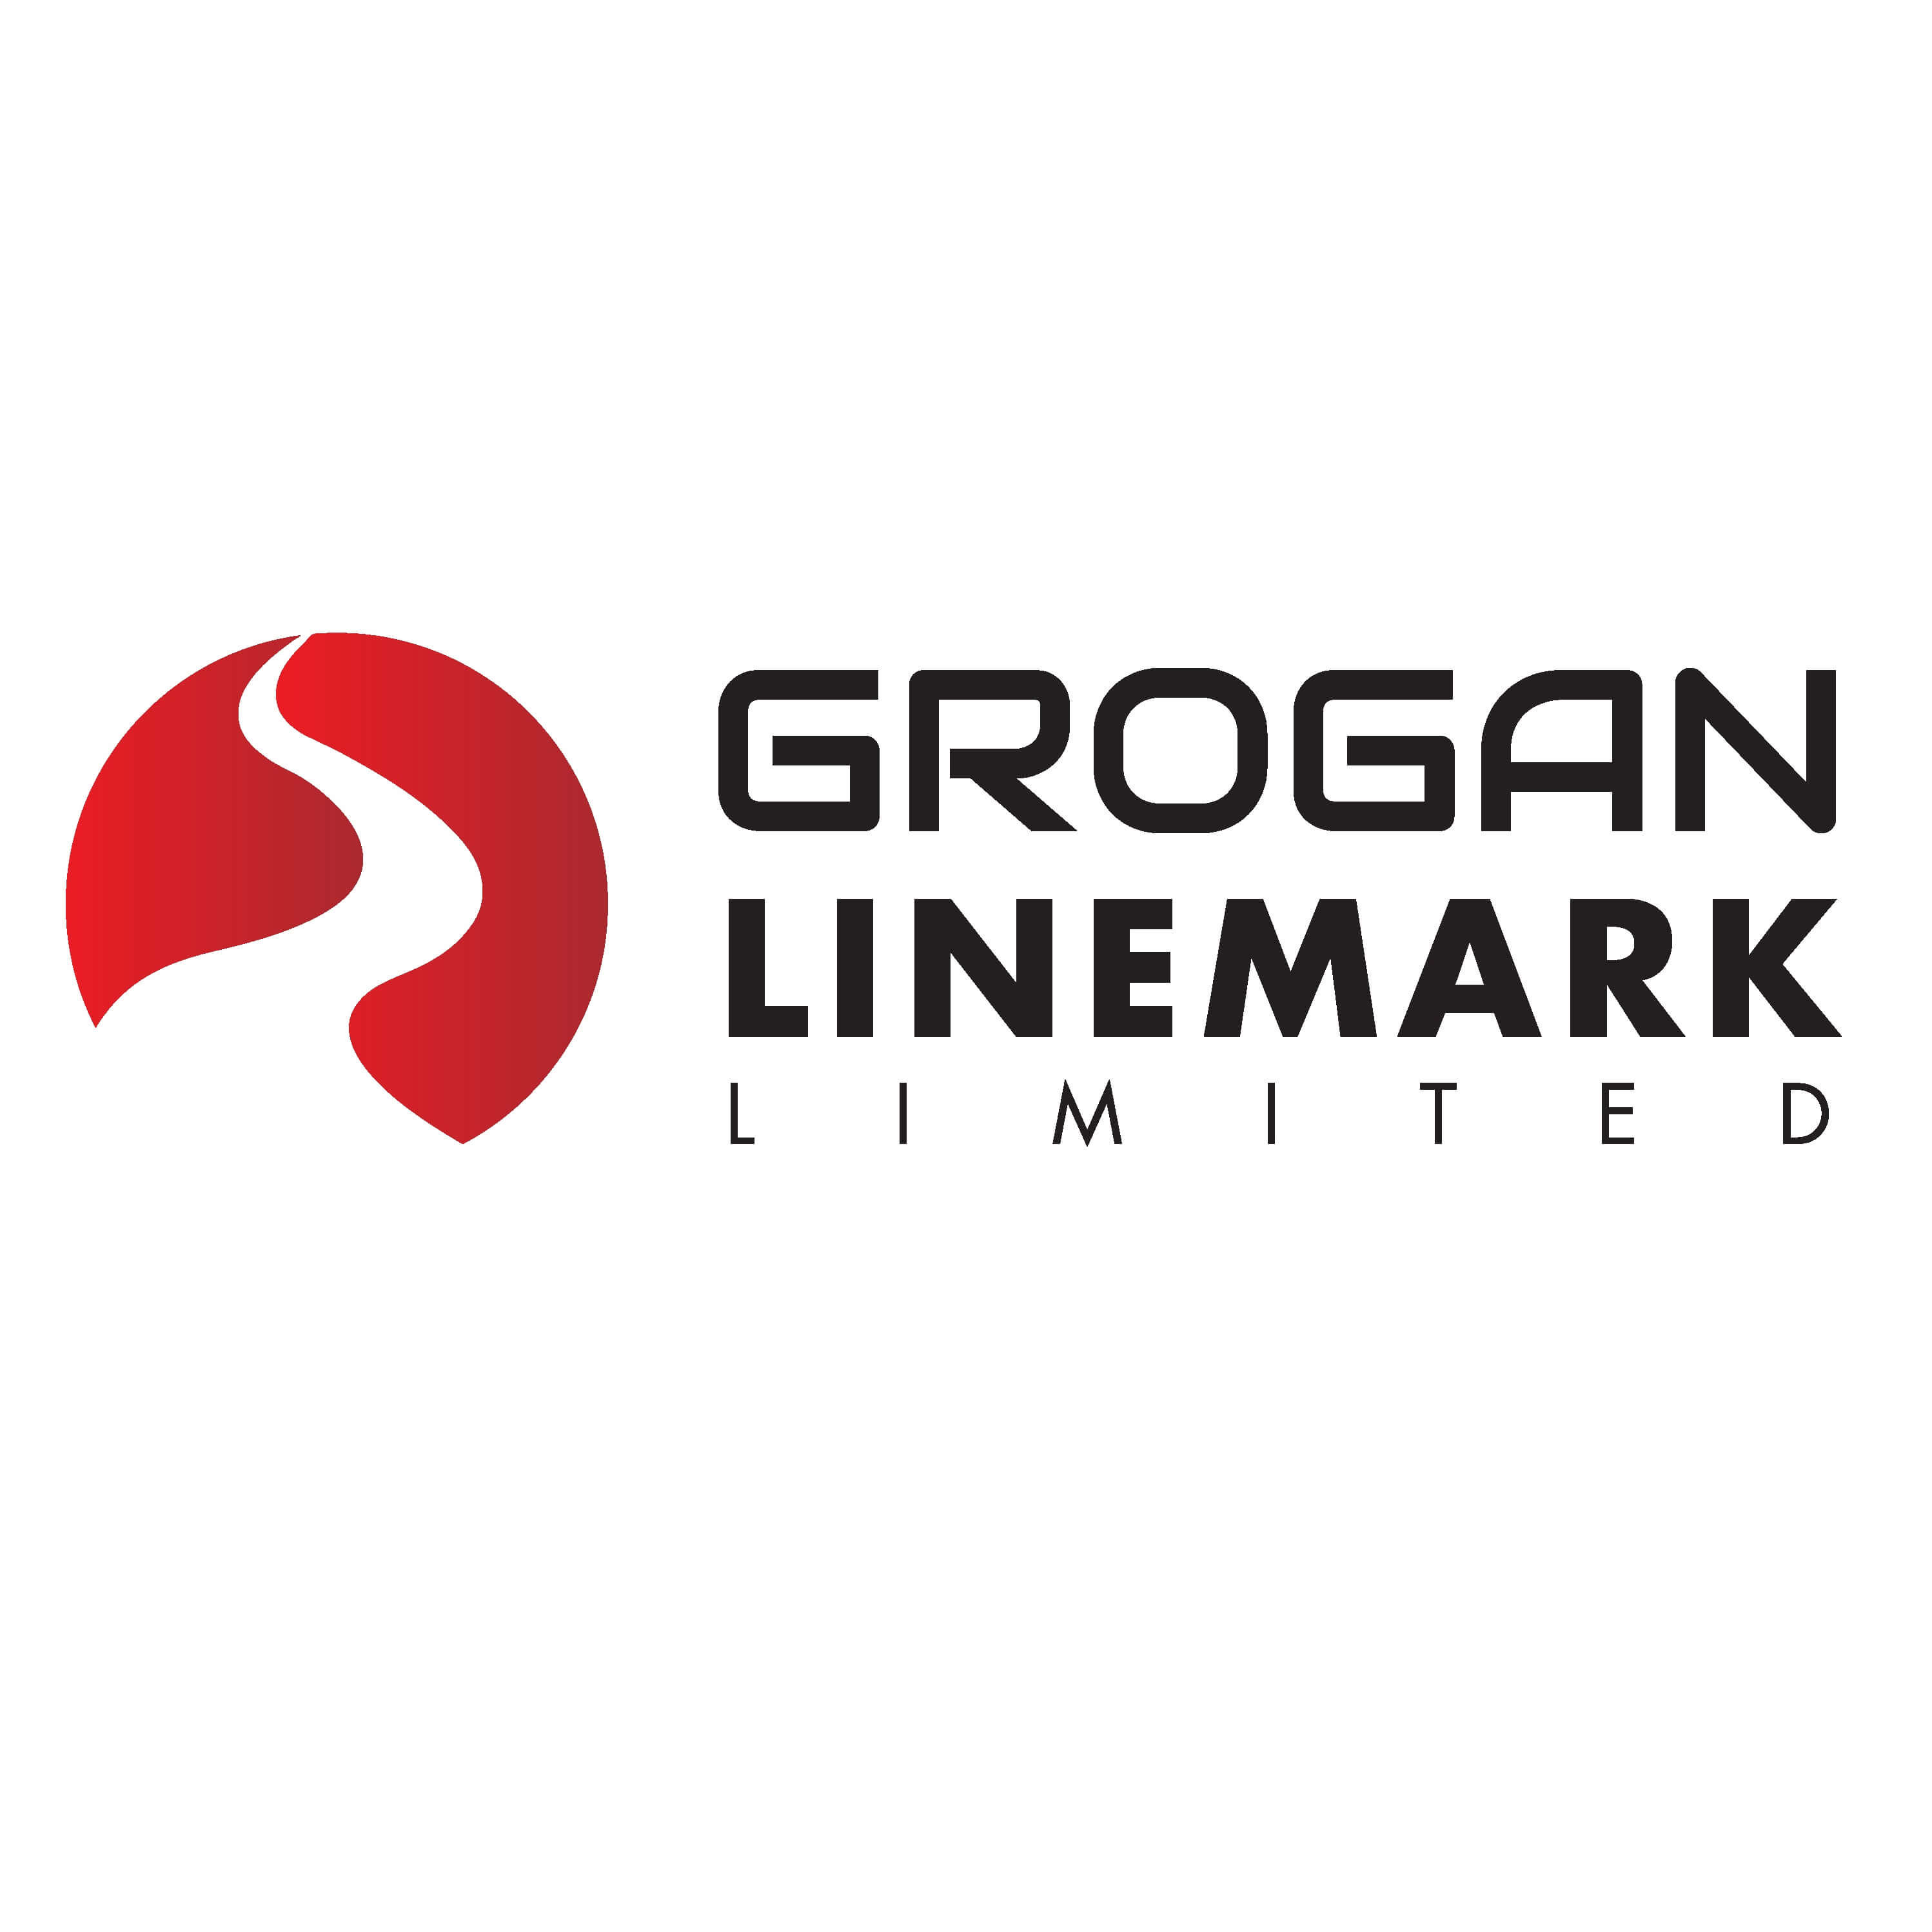 Grogan Linemark